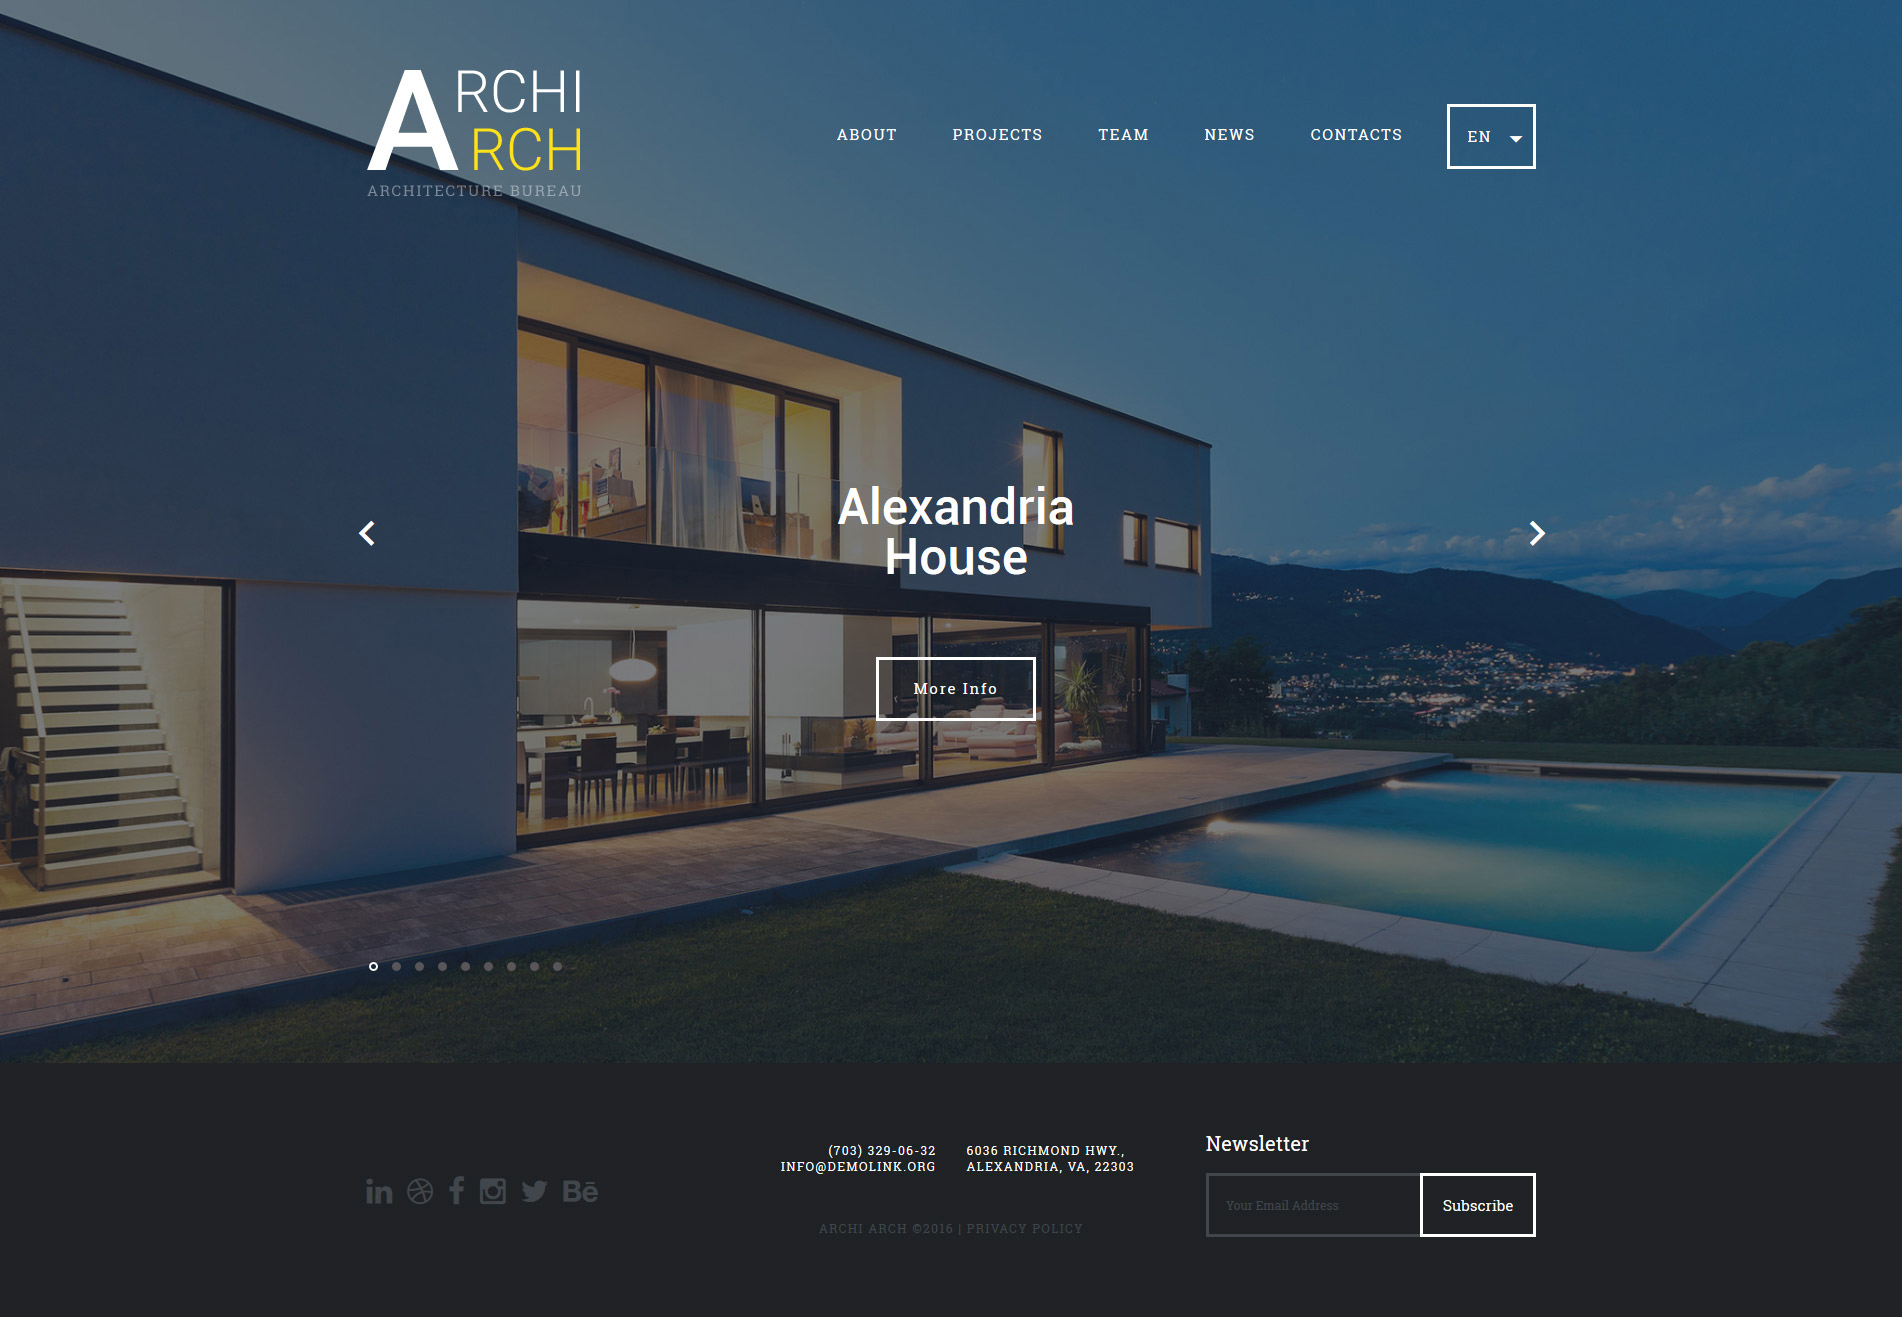 ArchiArch Website Template